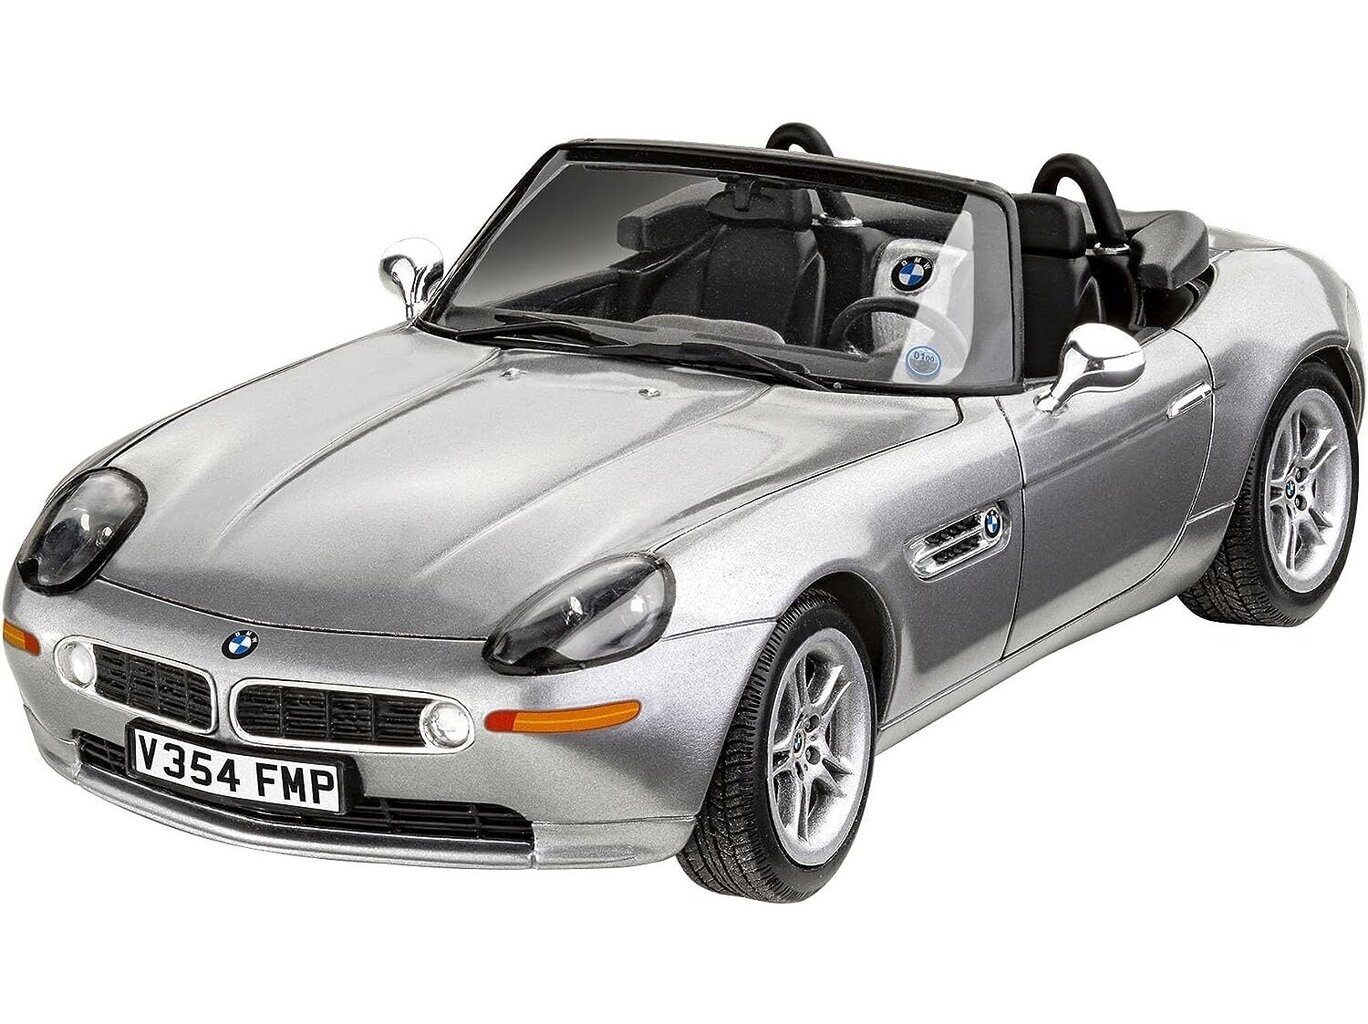 Mašina Revell - James Bond BMW Z8 dāvanu komplekts, 1/24, 05662 cena un informācija | Konstruktori | 220.lv